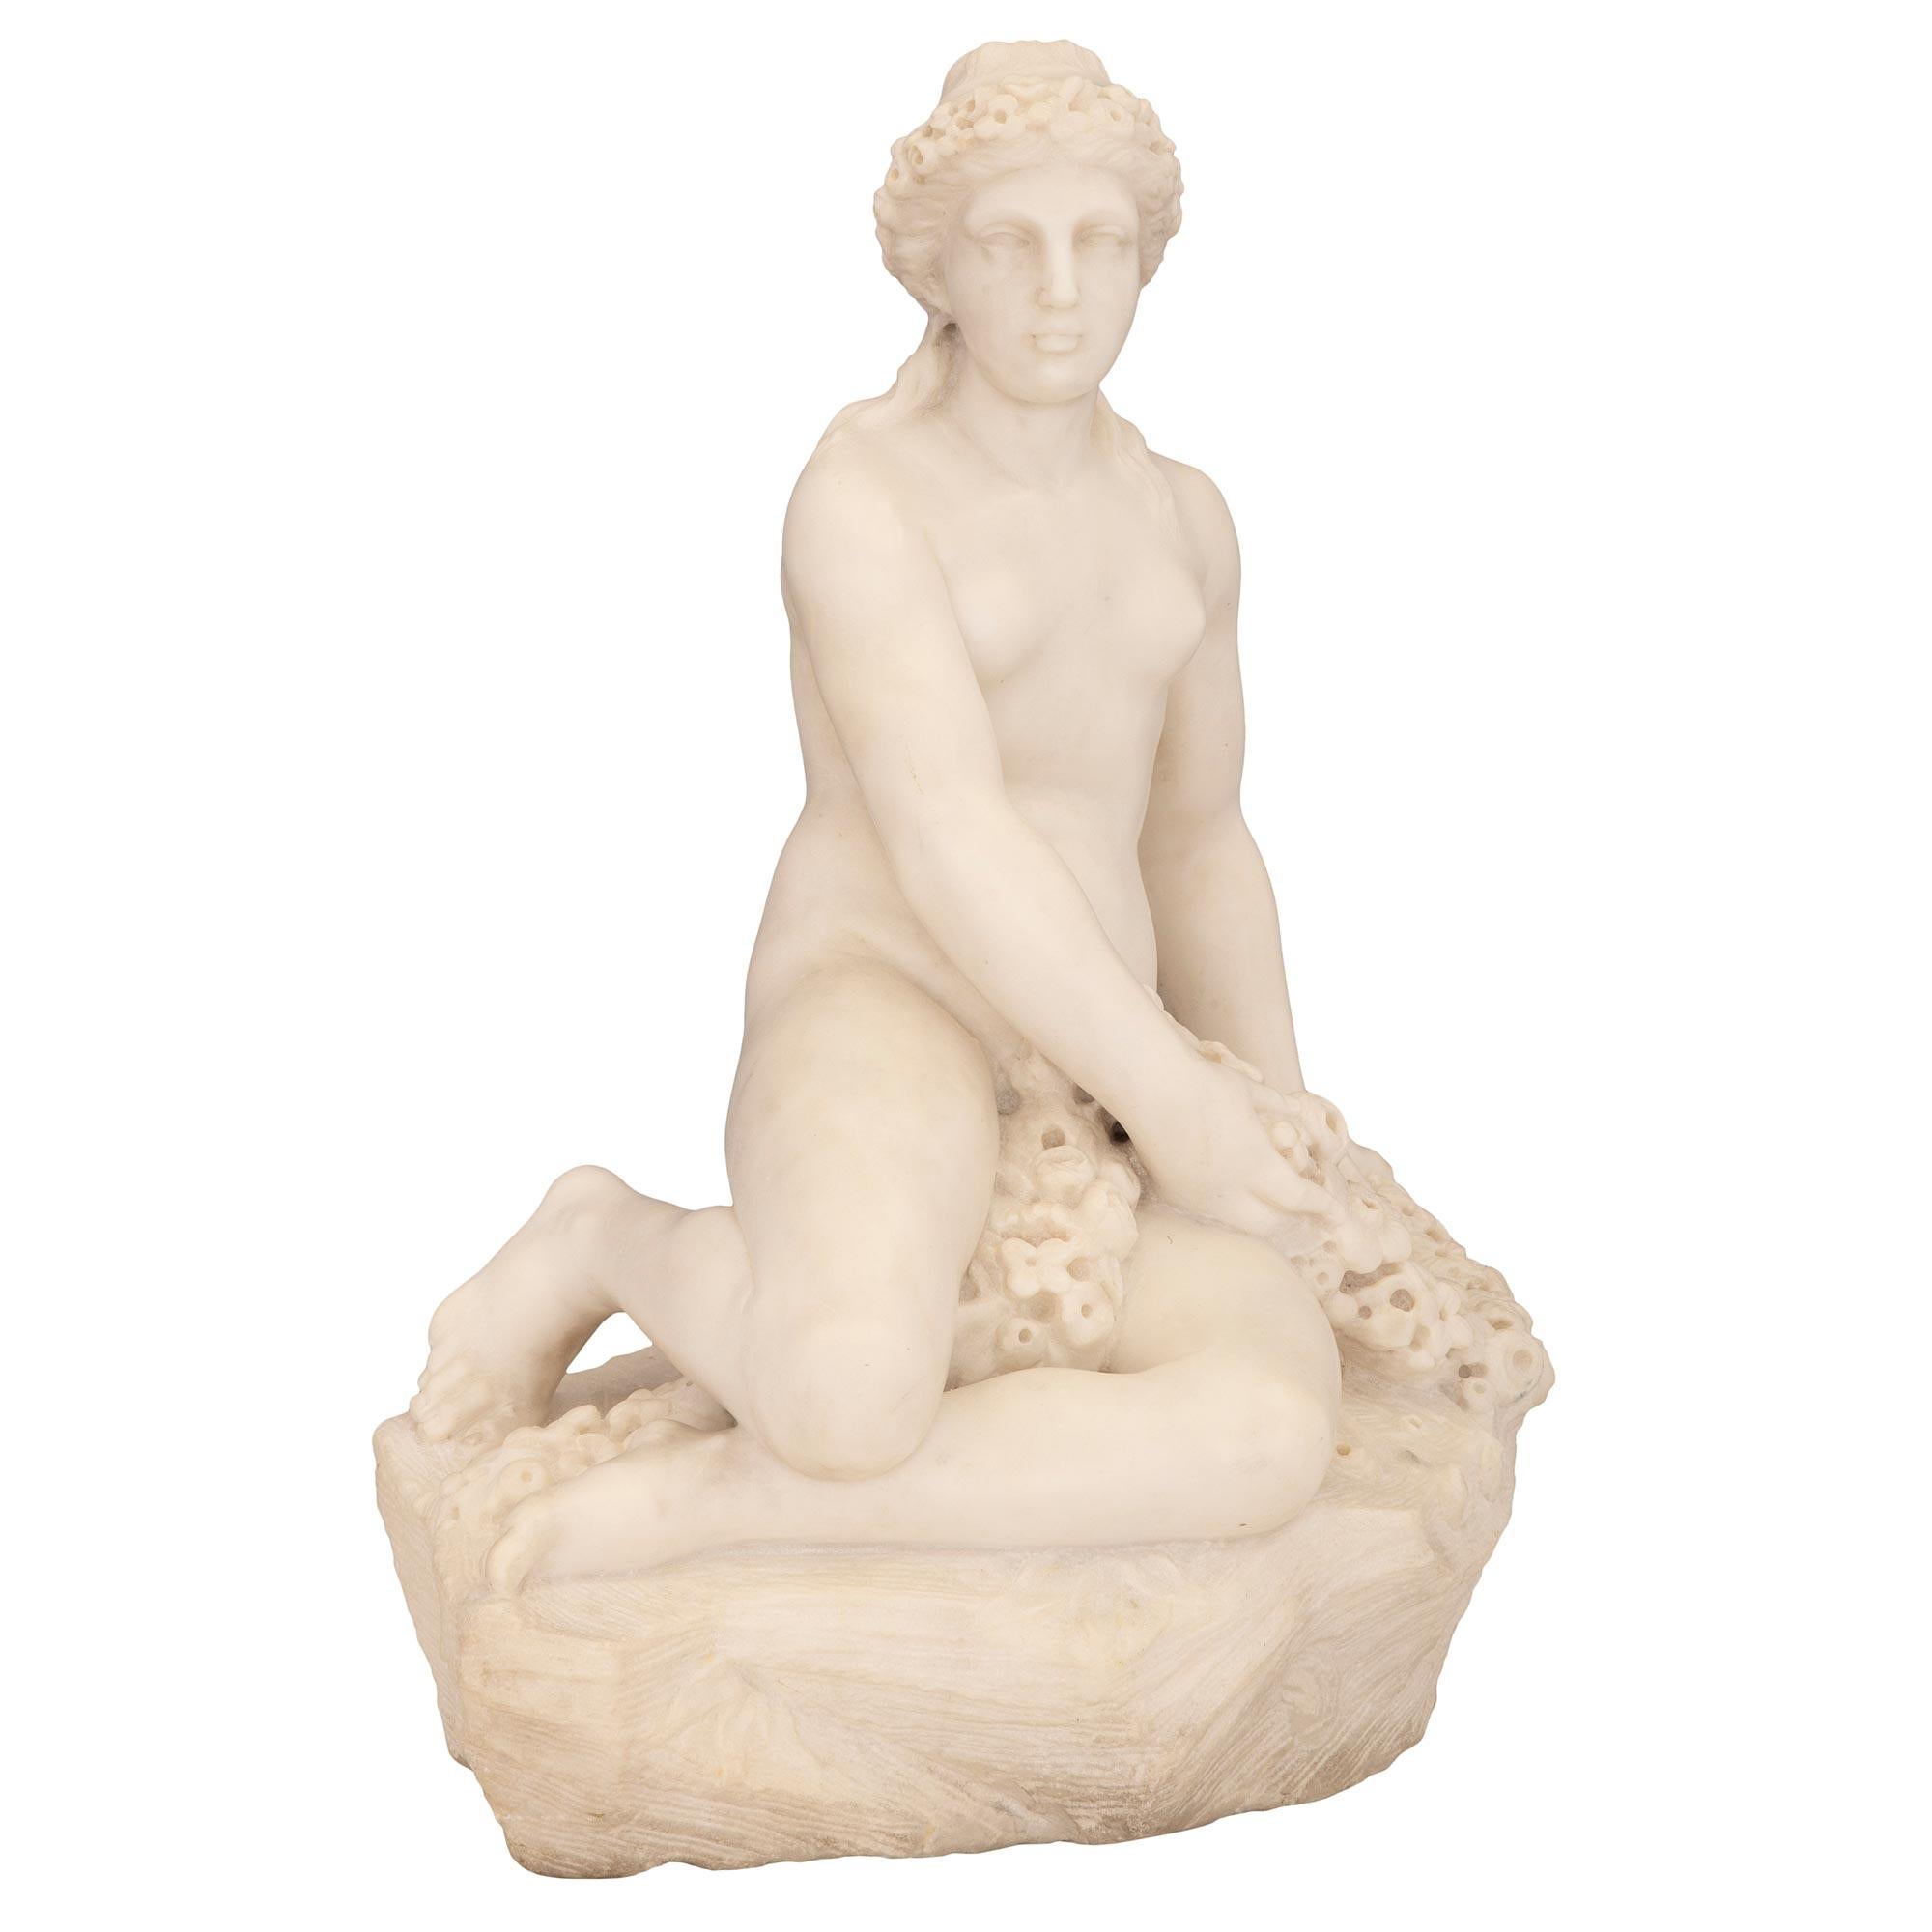 Statue en marbre blanc de Carrare de très haute qualité, datant du 19e siècle, originaire d'Italie. Cette statue merveilleusement exécutée représente une belle jeune femme assise sur un arbre taillé, avec un panier tressé rempli de fleurs